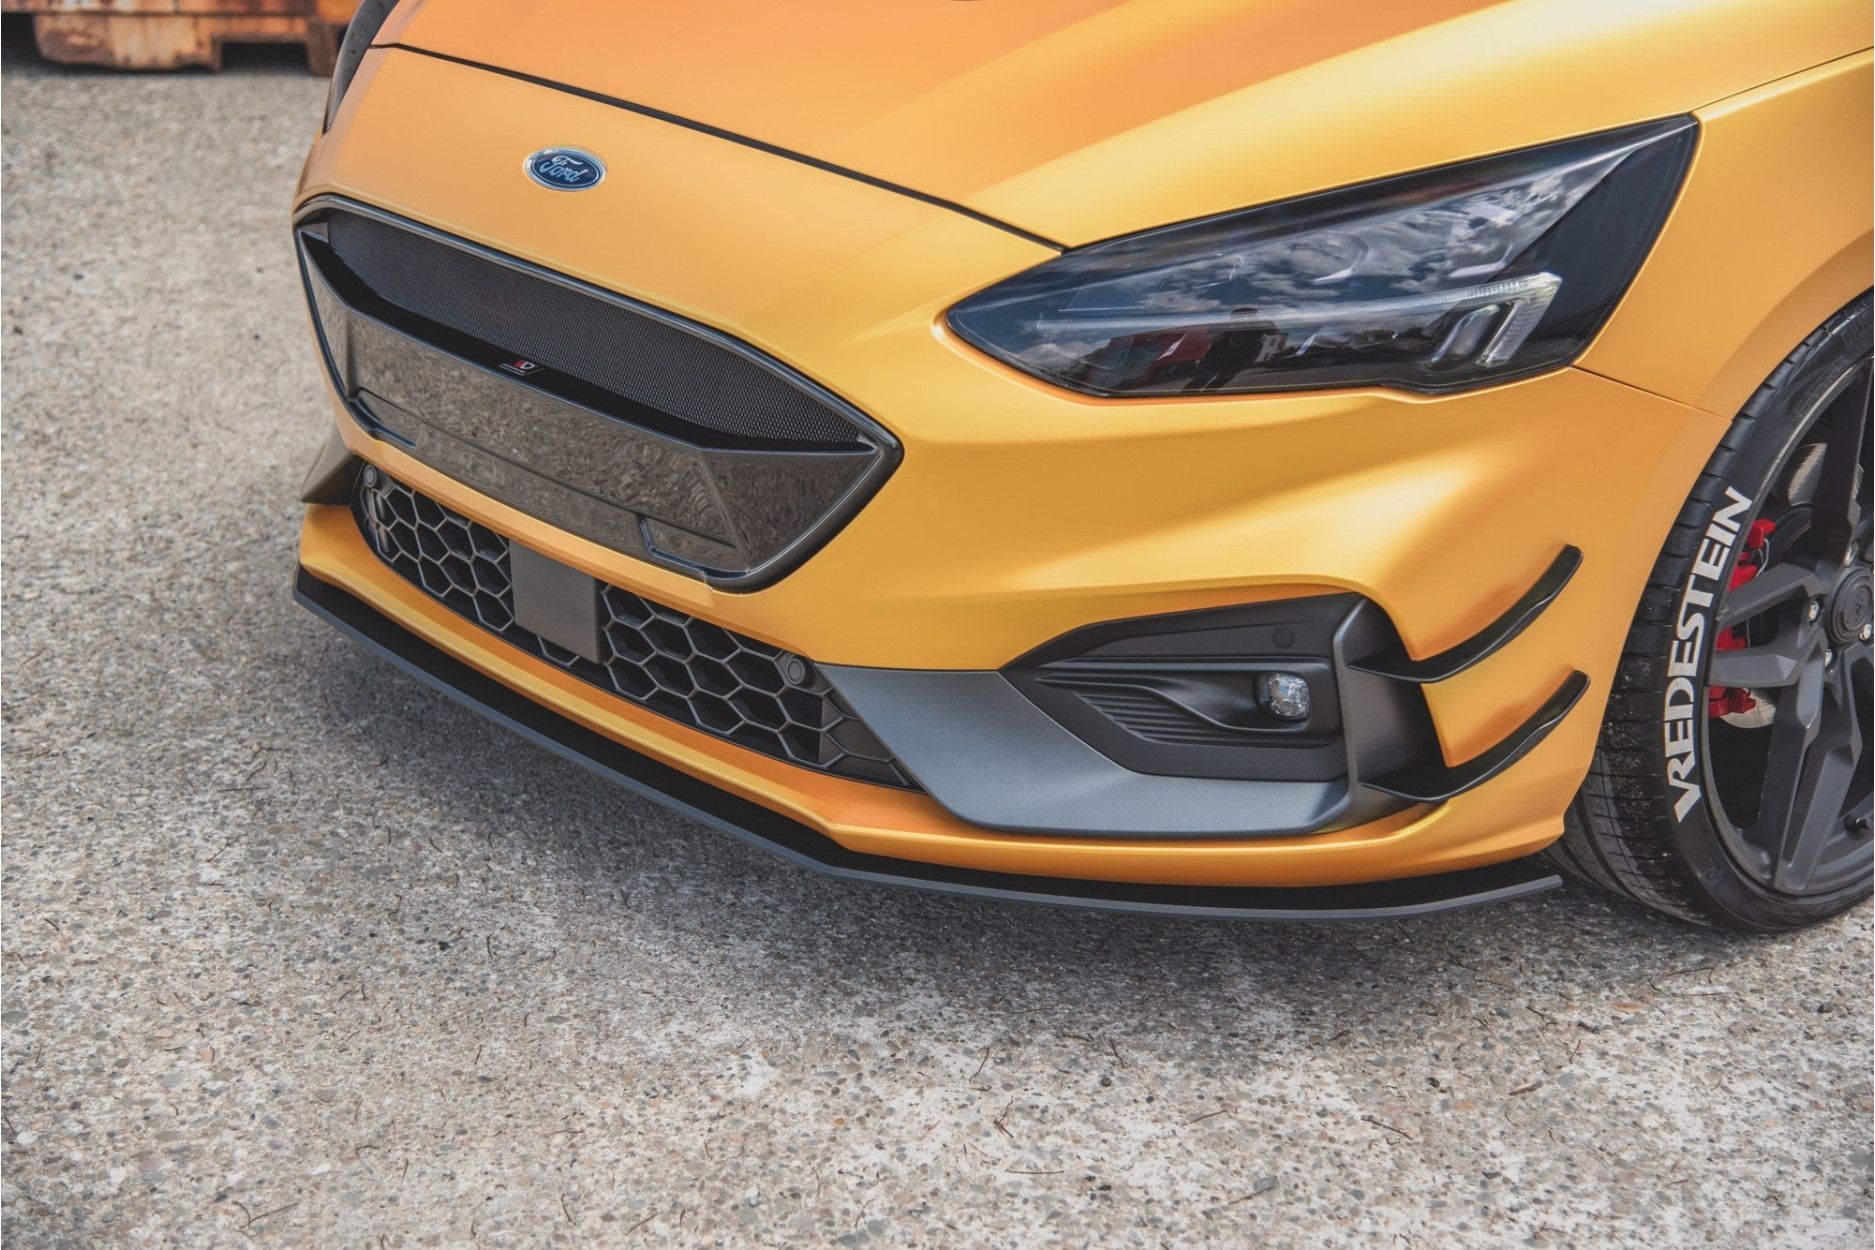 Maxtondesign Frontlippe für Ford Focus MK4 STST-Line Racing schwarz -  online kaufen bei CFD